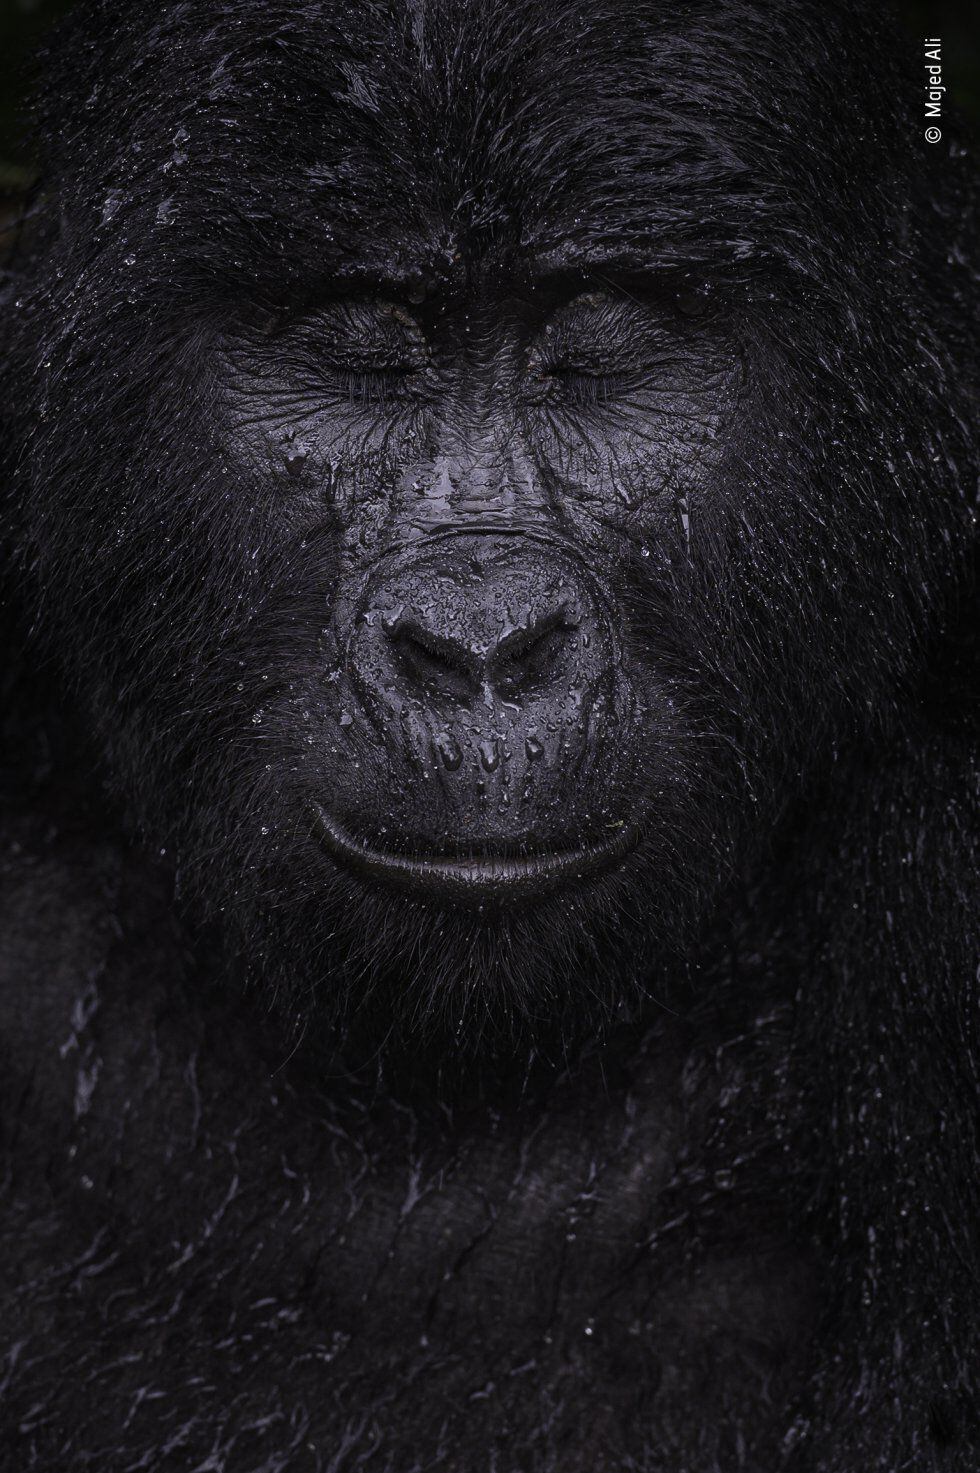 Kibande, un gorila de montaña de casi 40 años, cierra los ojos bajo la lluvia.